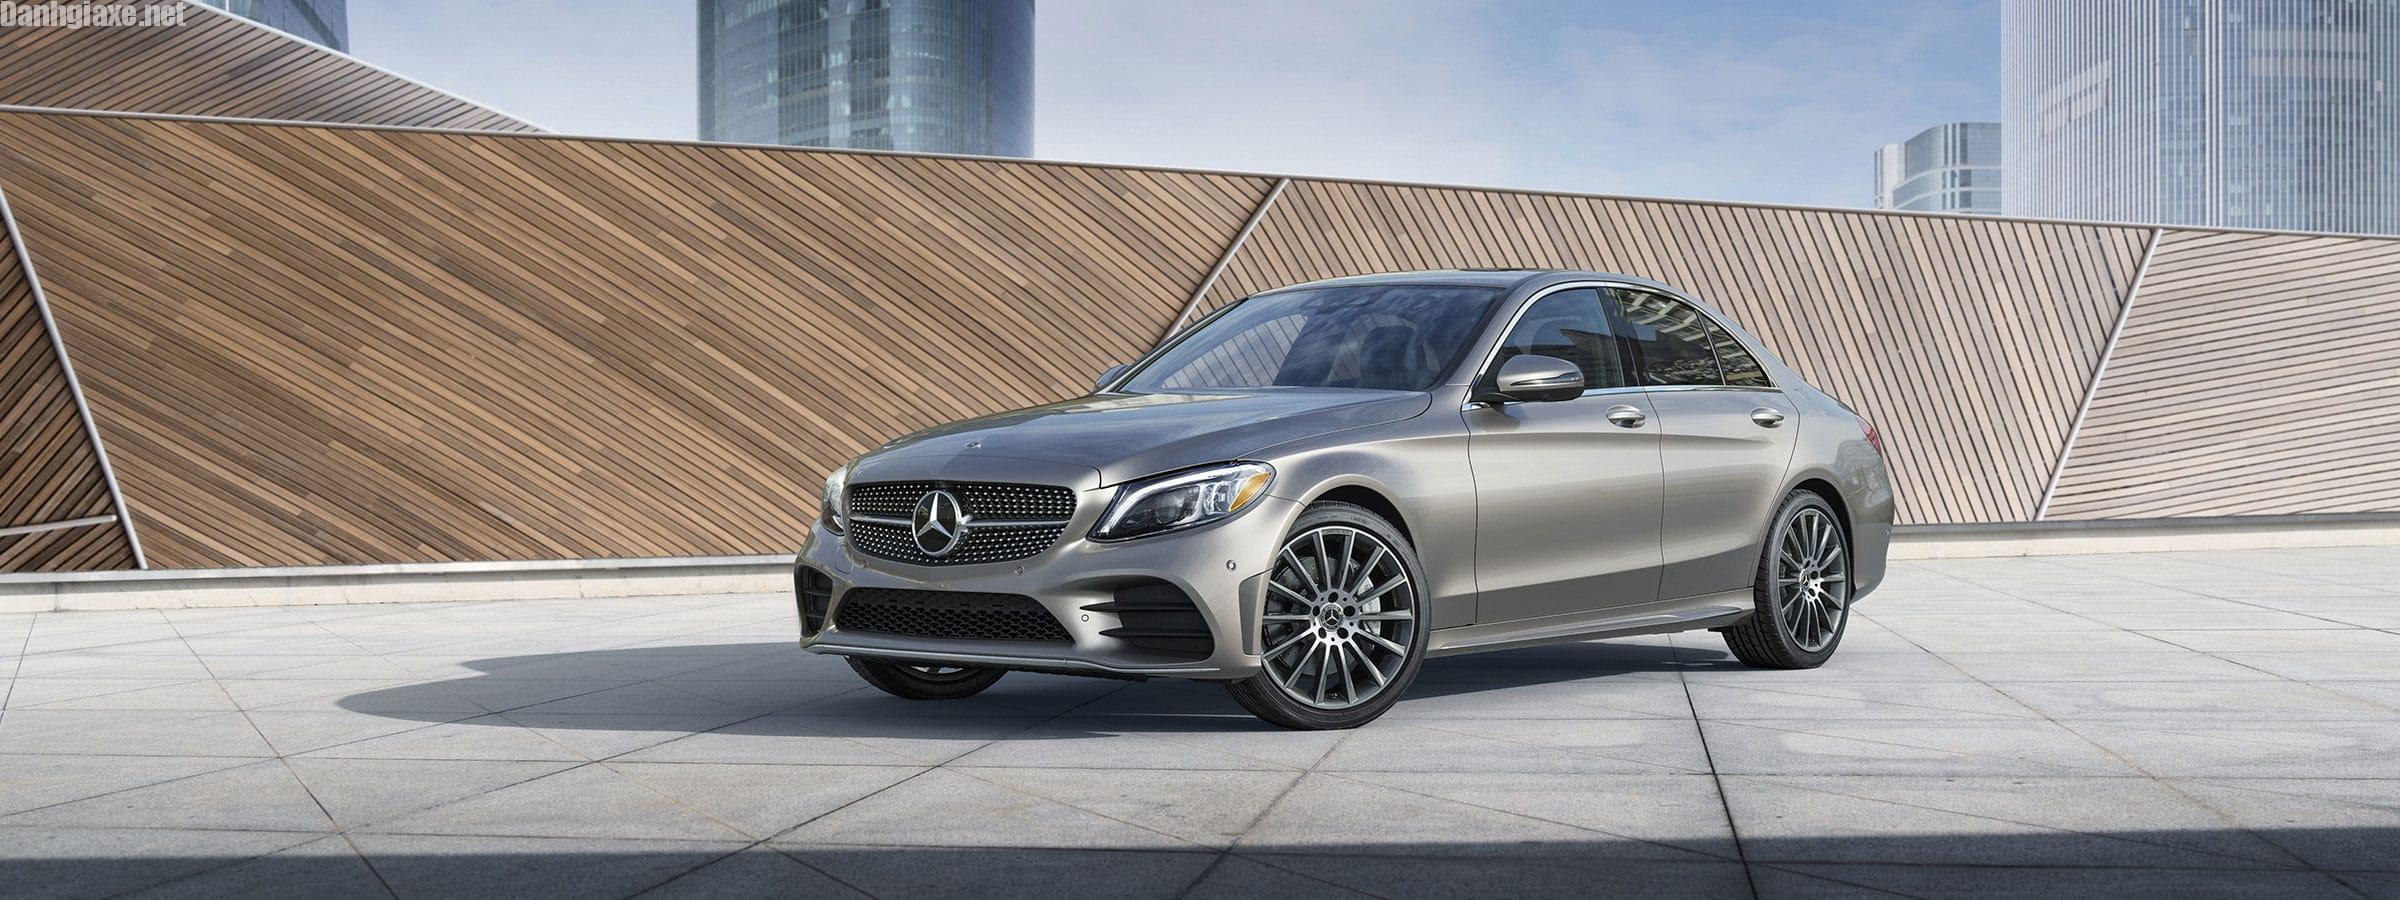 Đánh giá xe Mercedes C300 2019 về động cơ và giá bán!